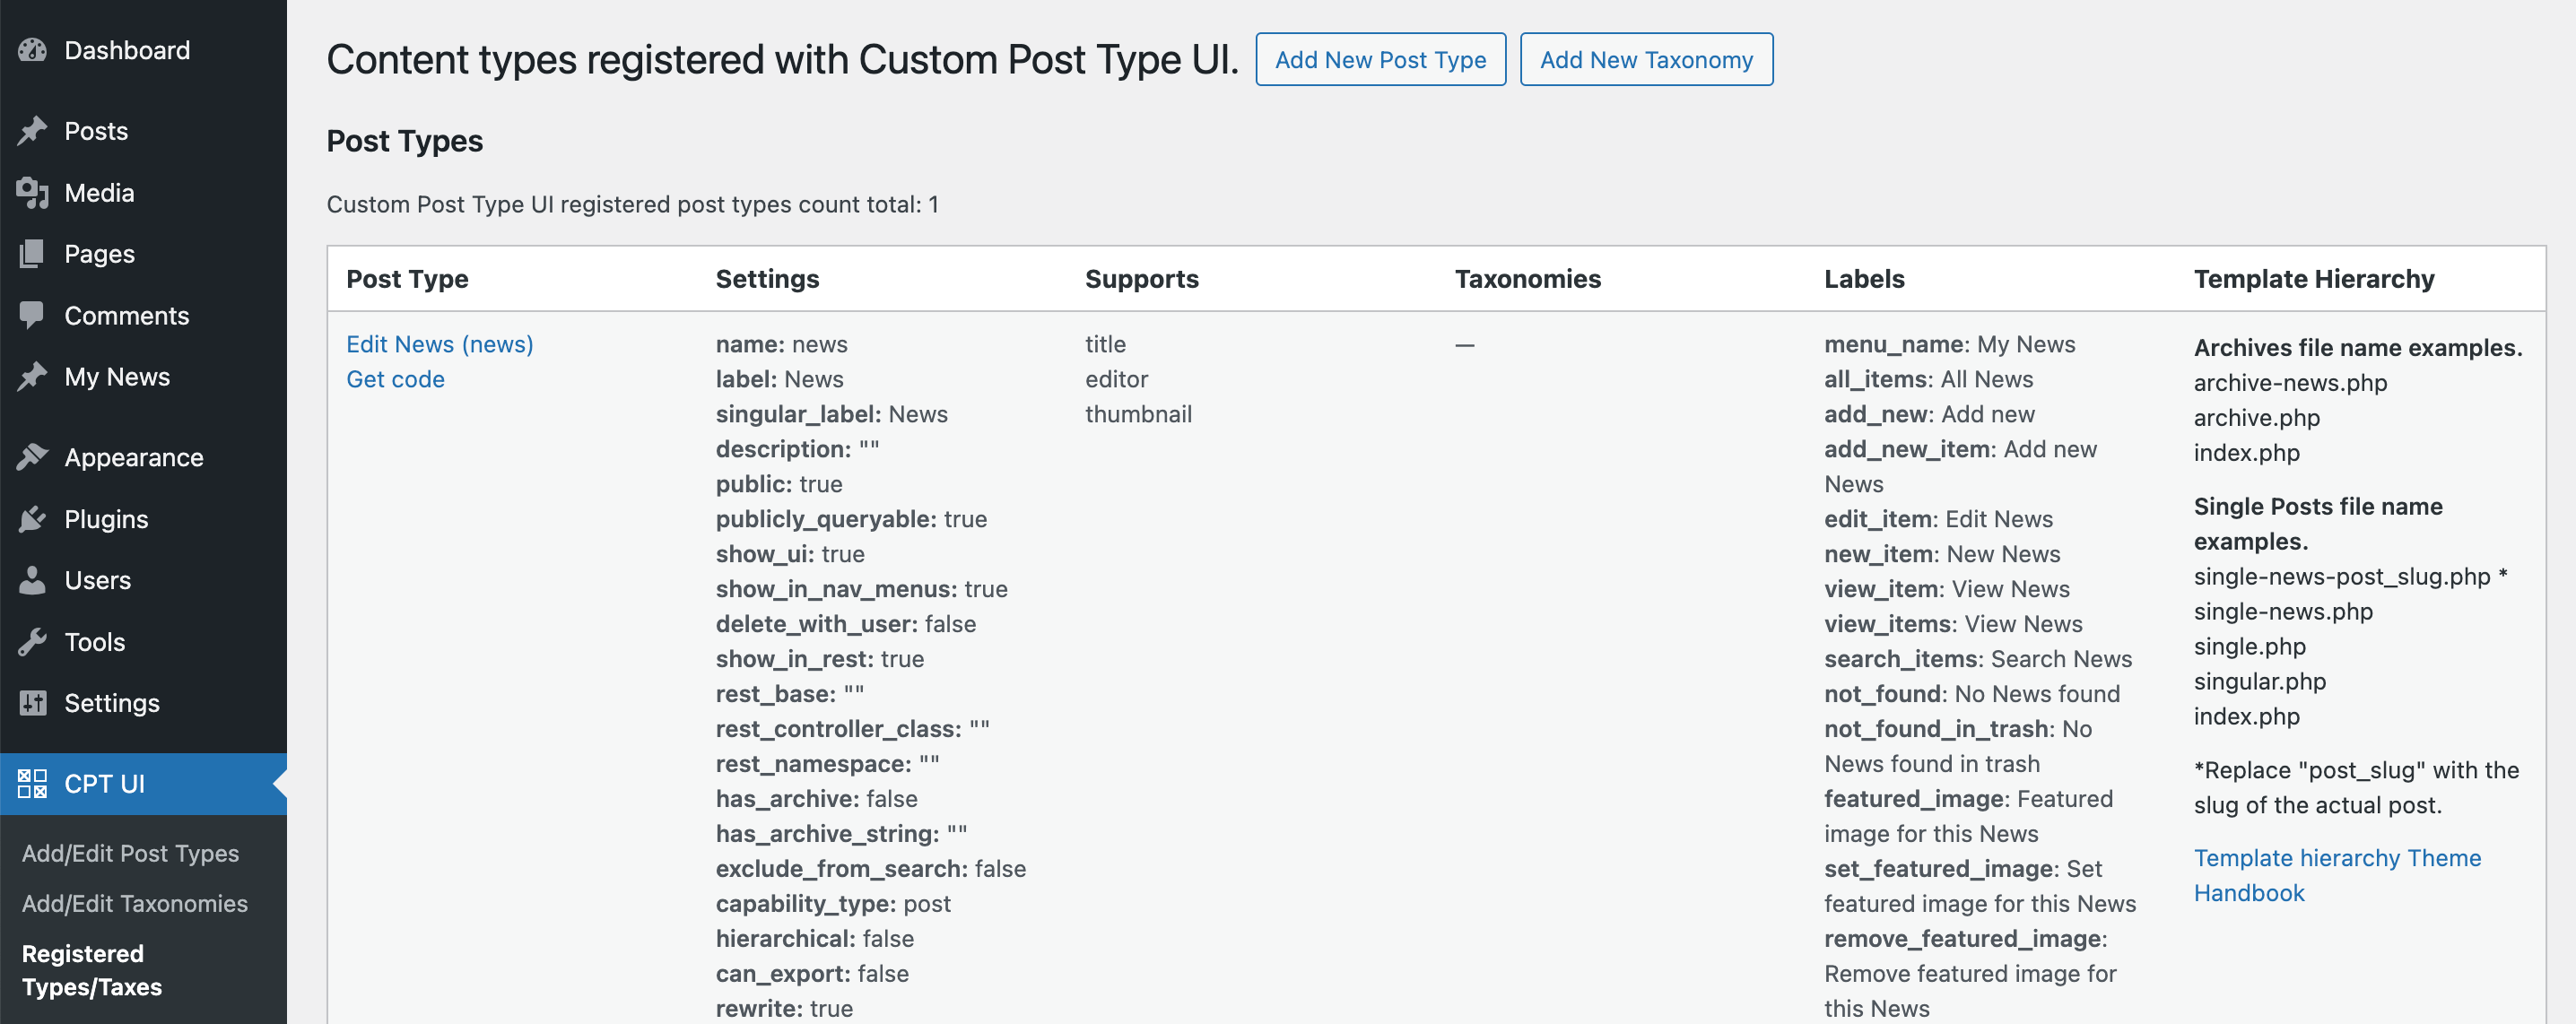 Uma visão geral dos tipos de postagem personalizados do WordPress criados pelo plugin Custom Post Type UI.